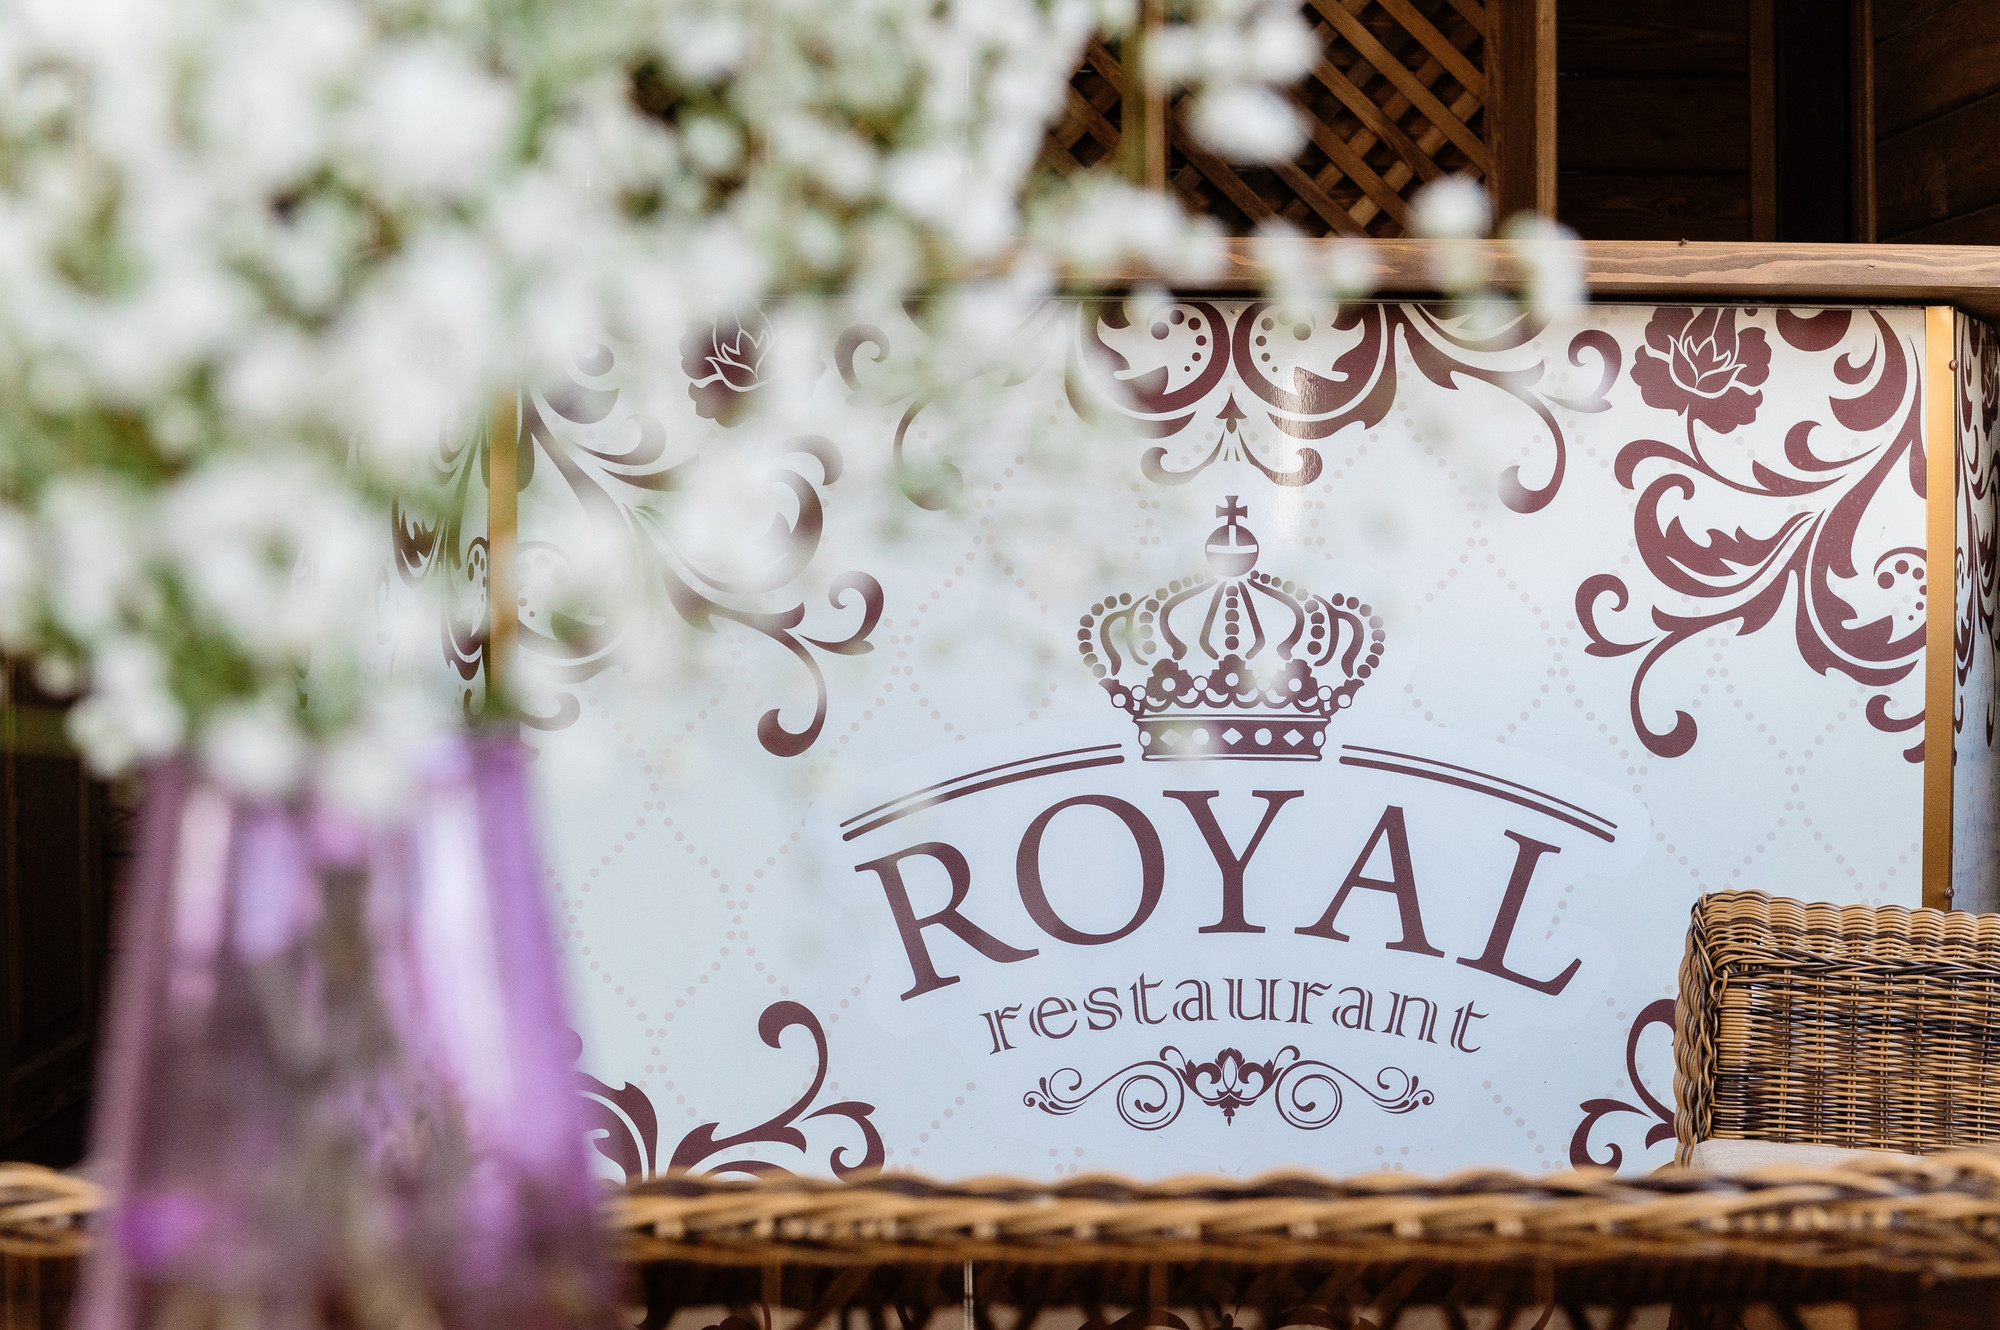 Royal ресторанный комплекс (Ресторан )